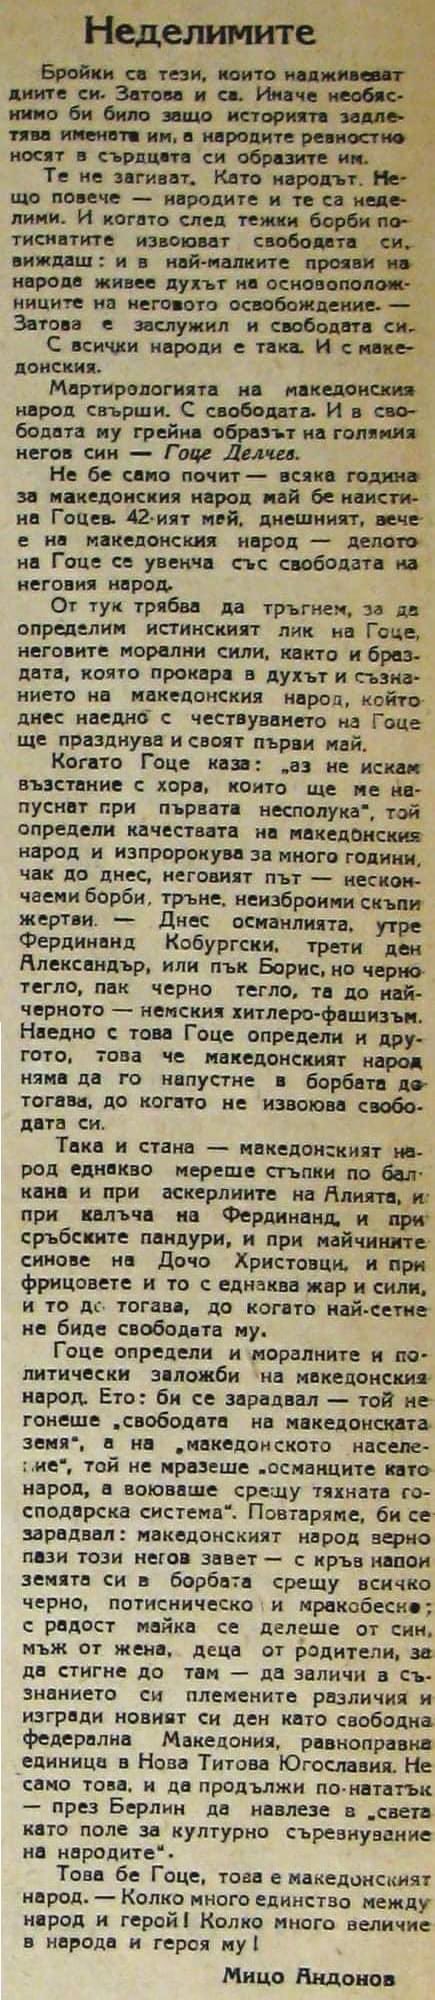 1945_Мице Андонов - ’Недилимите‘